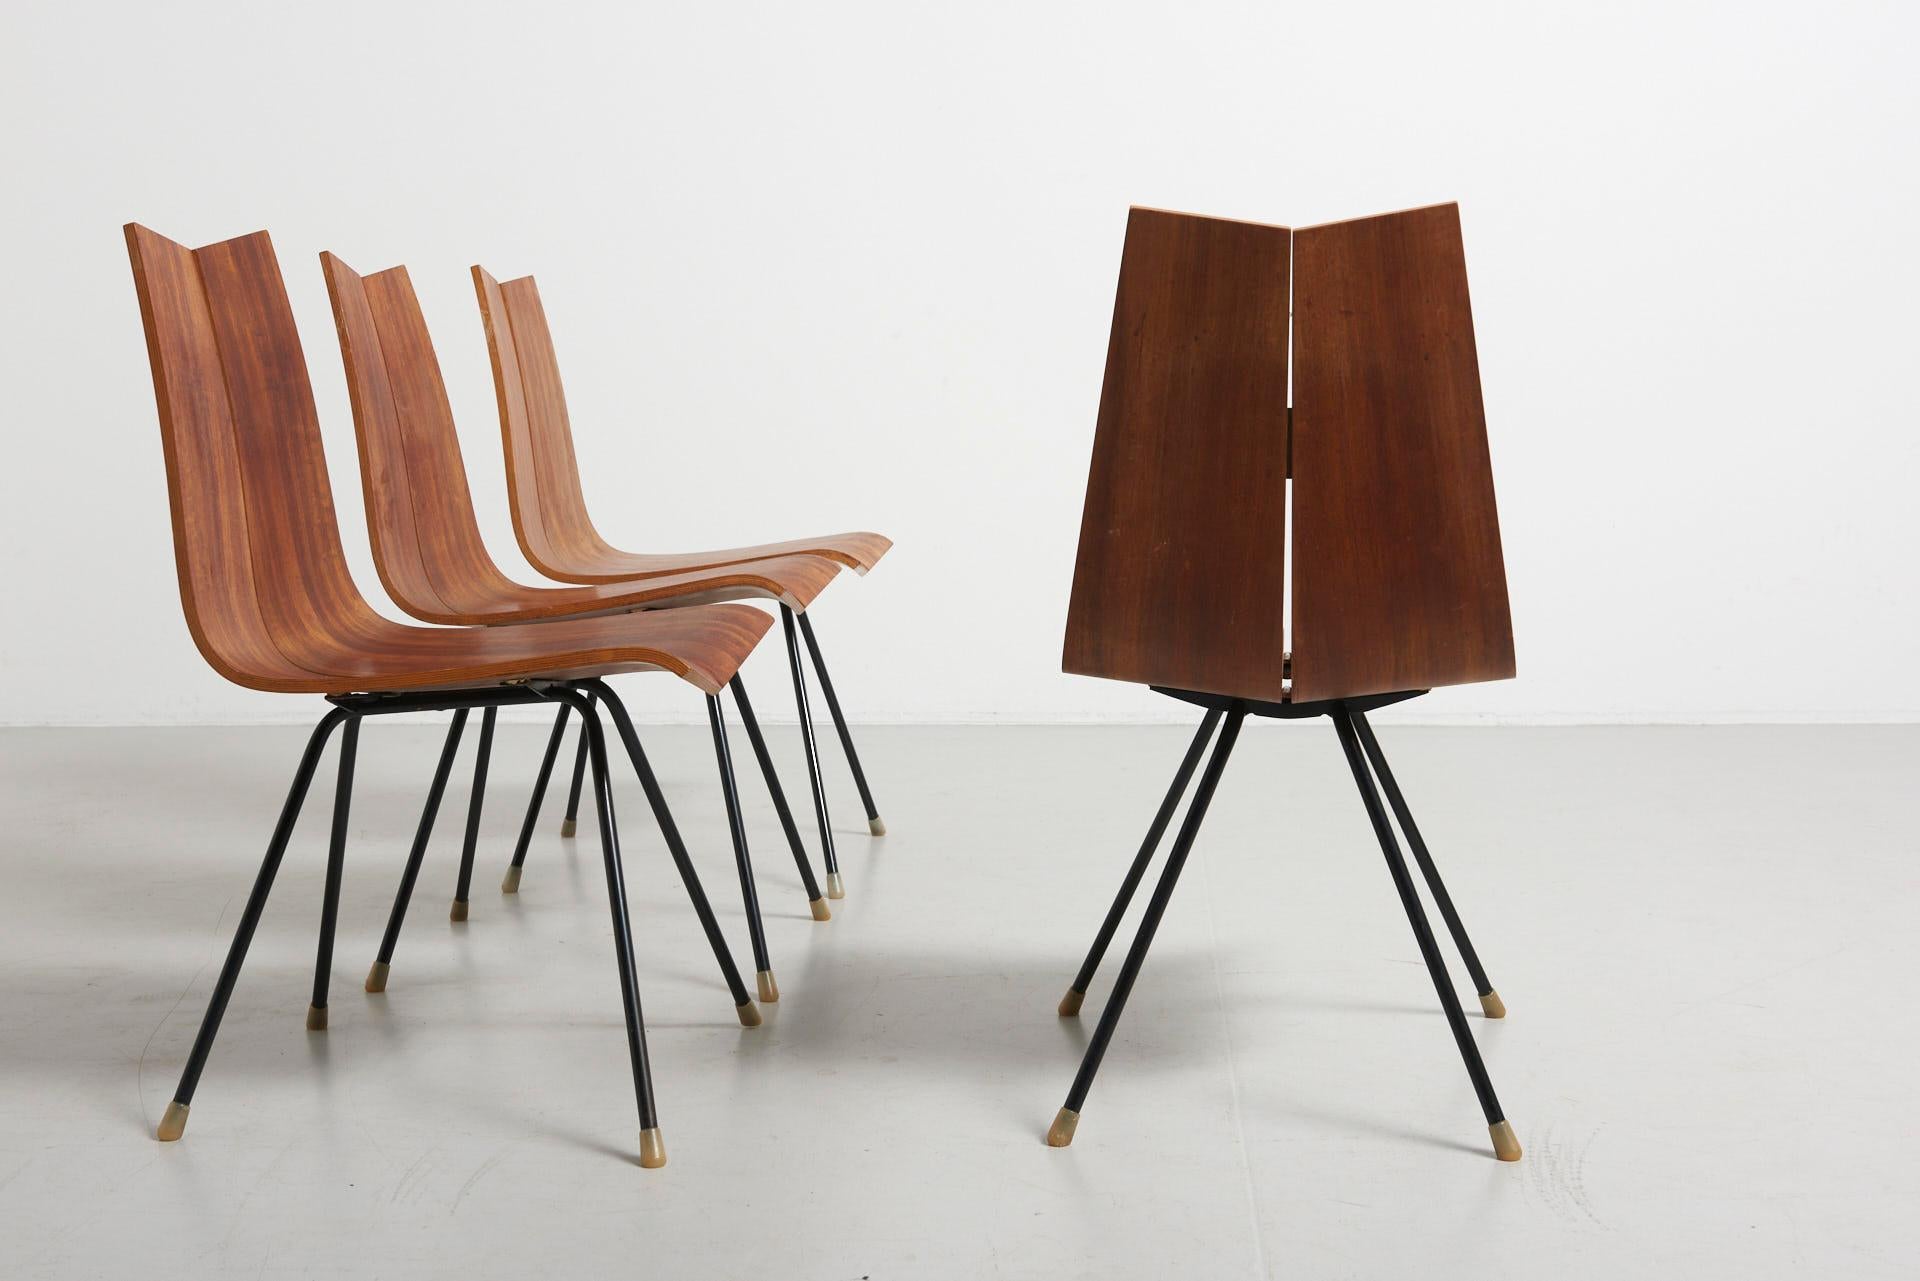 4 'GA' Chairs by Hans Bellmann in 1955, Made by Horgen Glarus in Switzerland 2